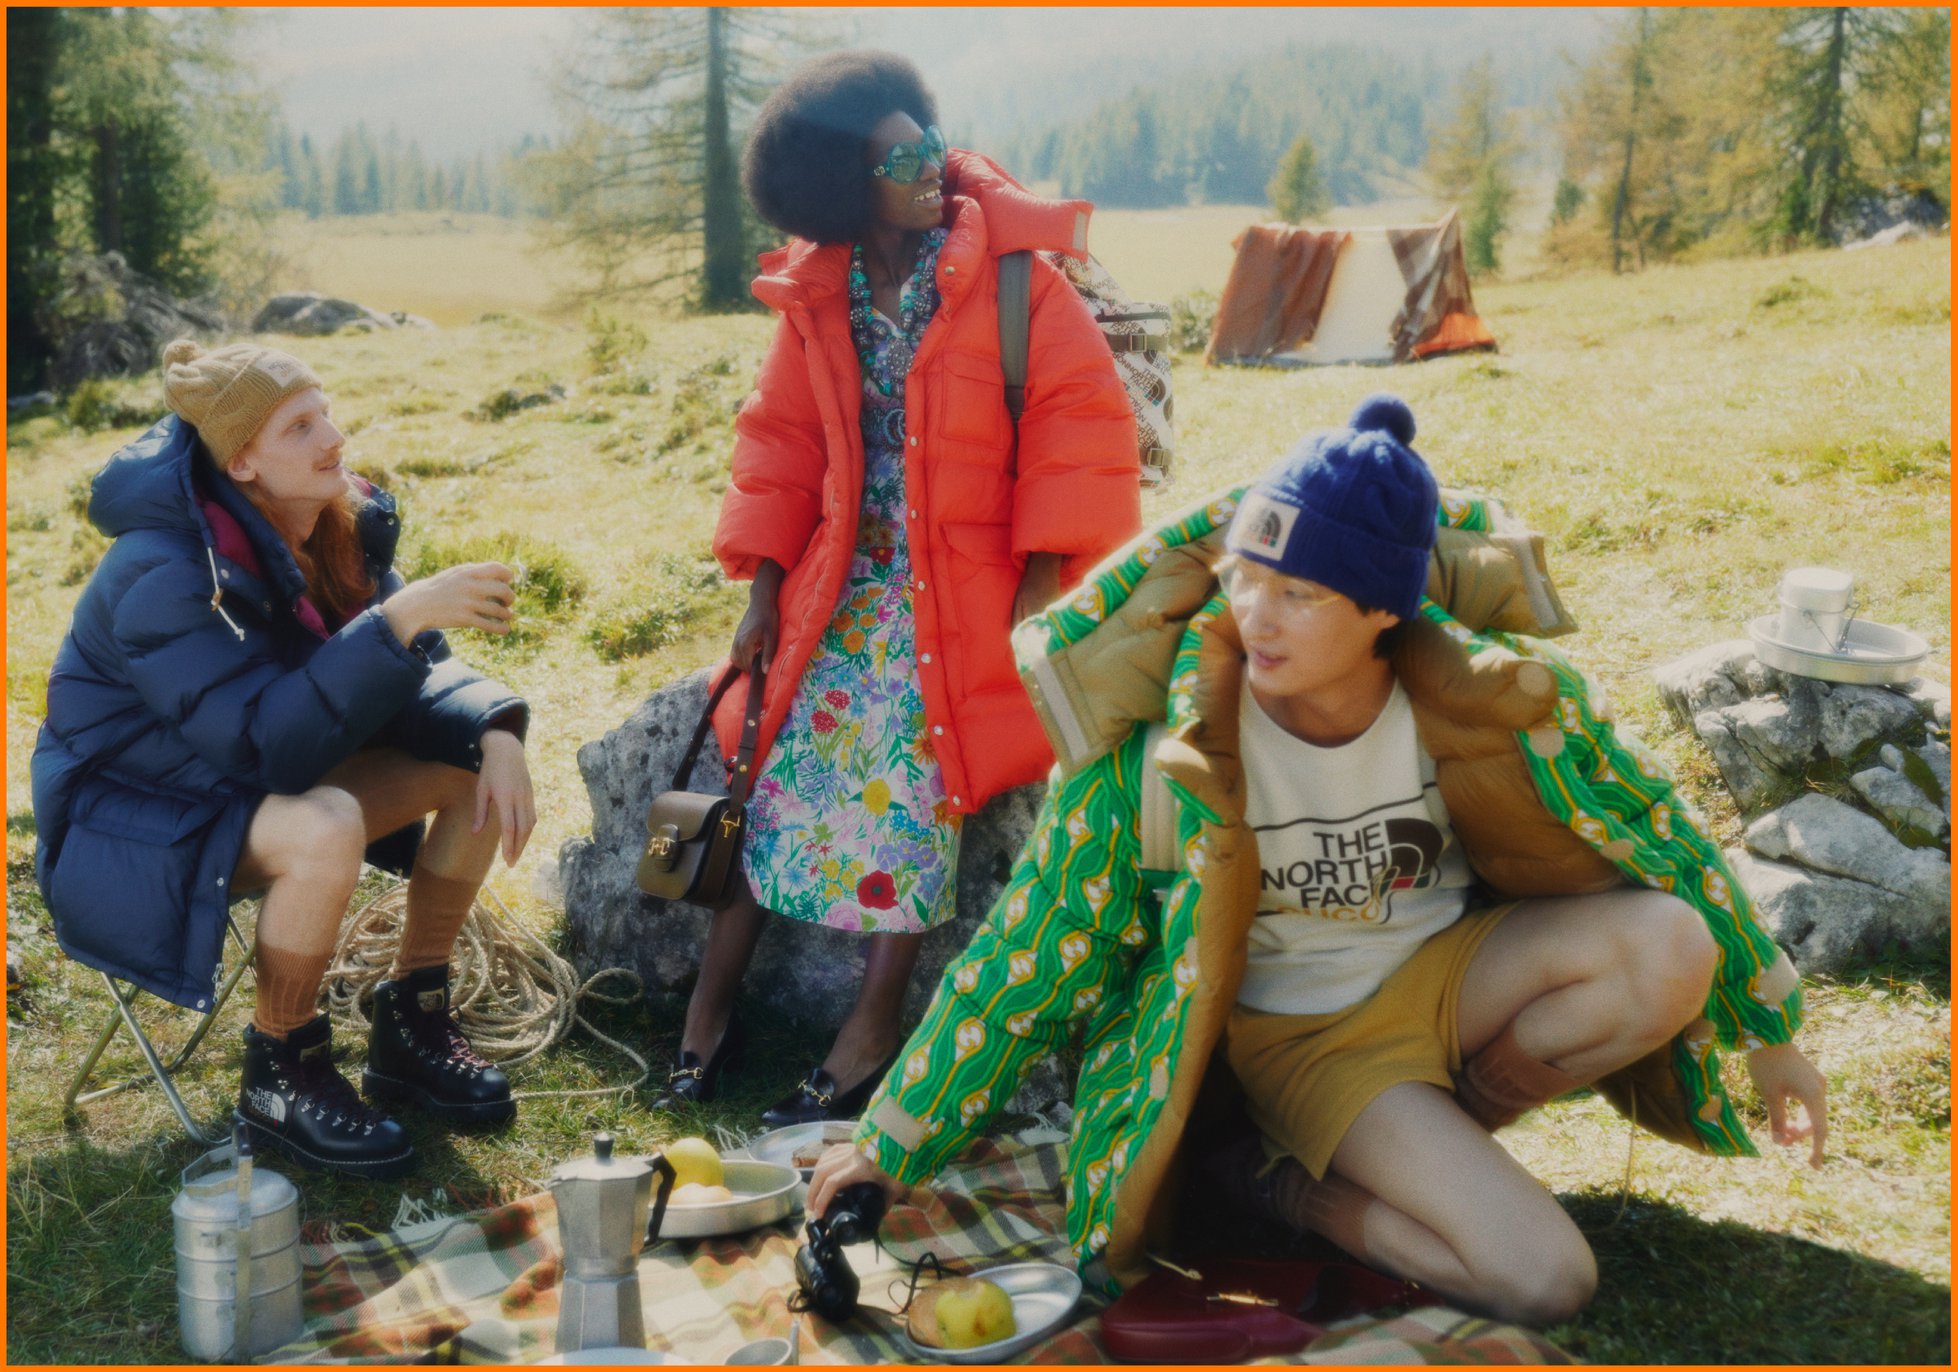 深入探索精神之內涵，#TheNorthFacexGucci 聯名系列，以1970年代戶外美學概念打造全新多元化高機能運動時尚，包括男女服裝、配飾、包袋與鞋履等，更特別推出帳篷、睡袋等標誌性戶外機能裝備。探索更多: capsule.gucci.com/tnfxgucci